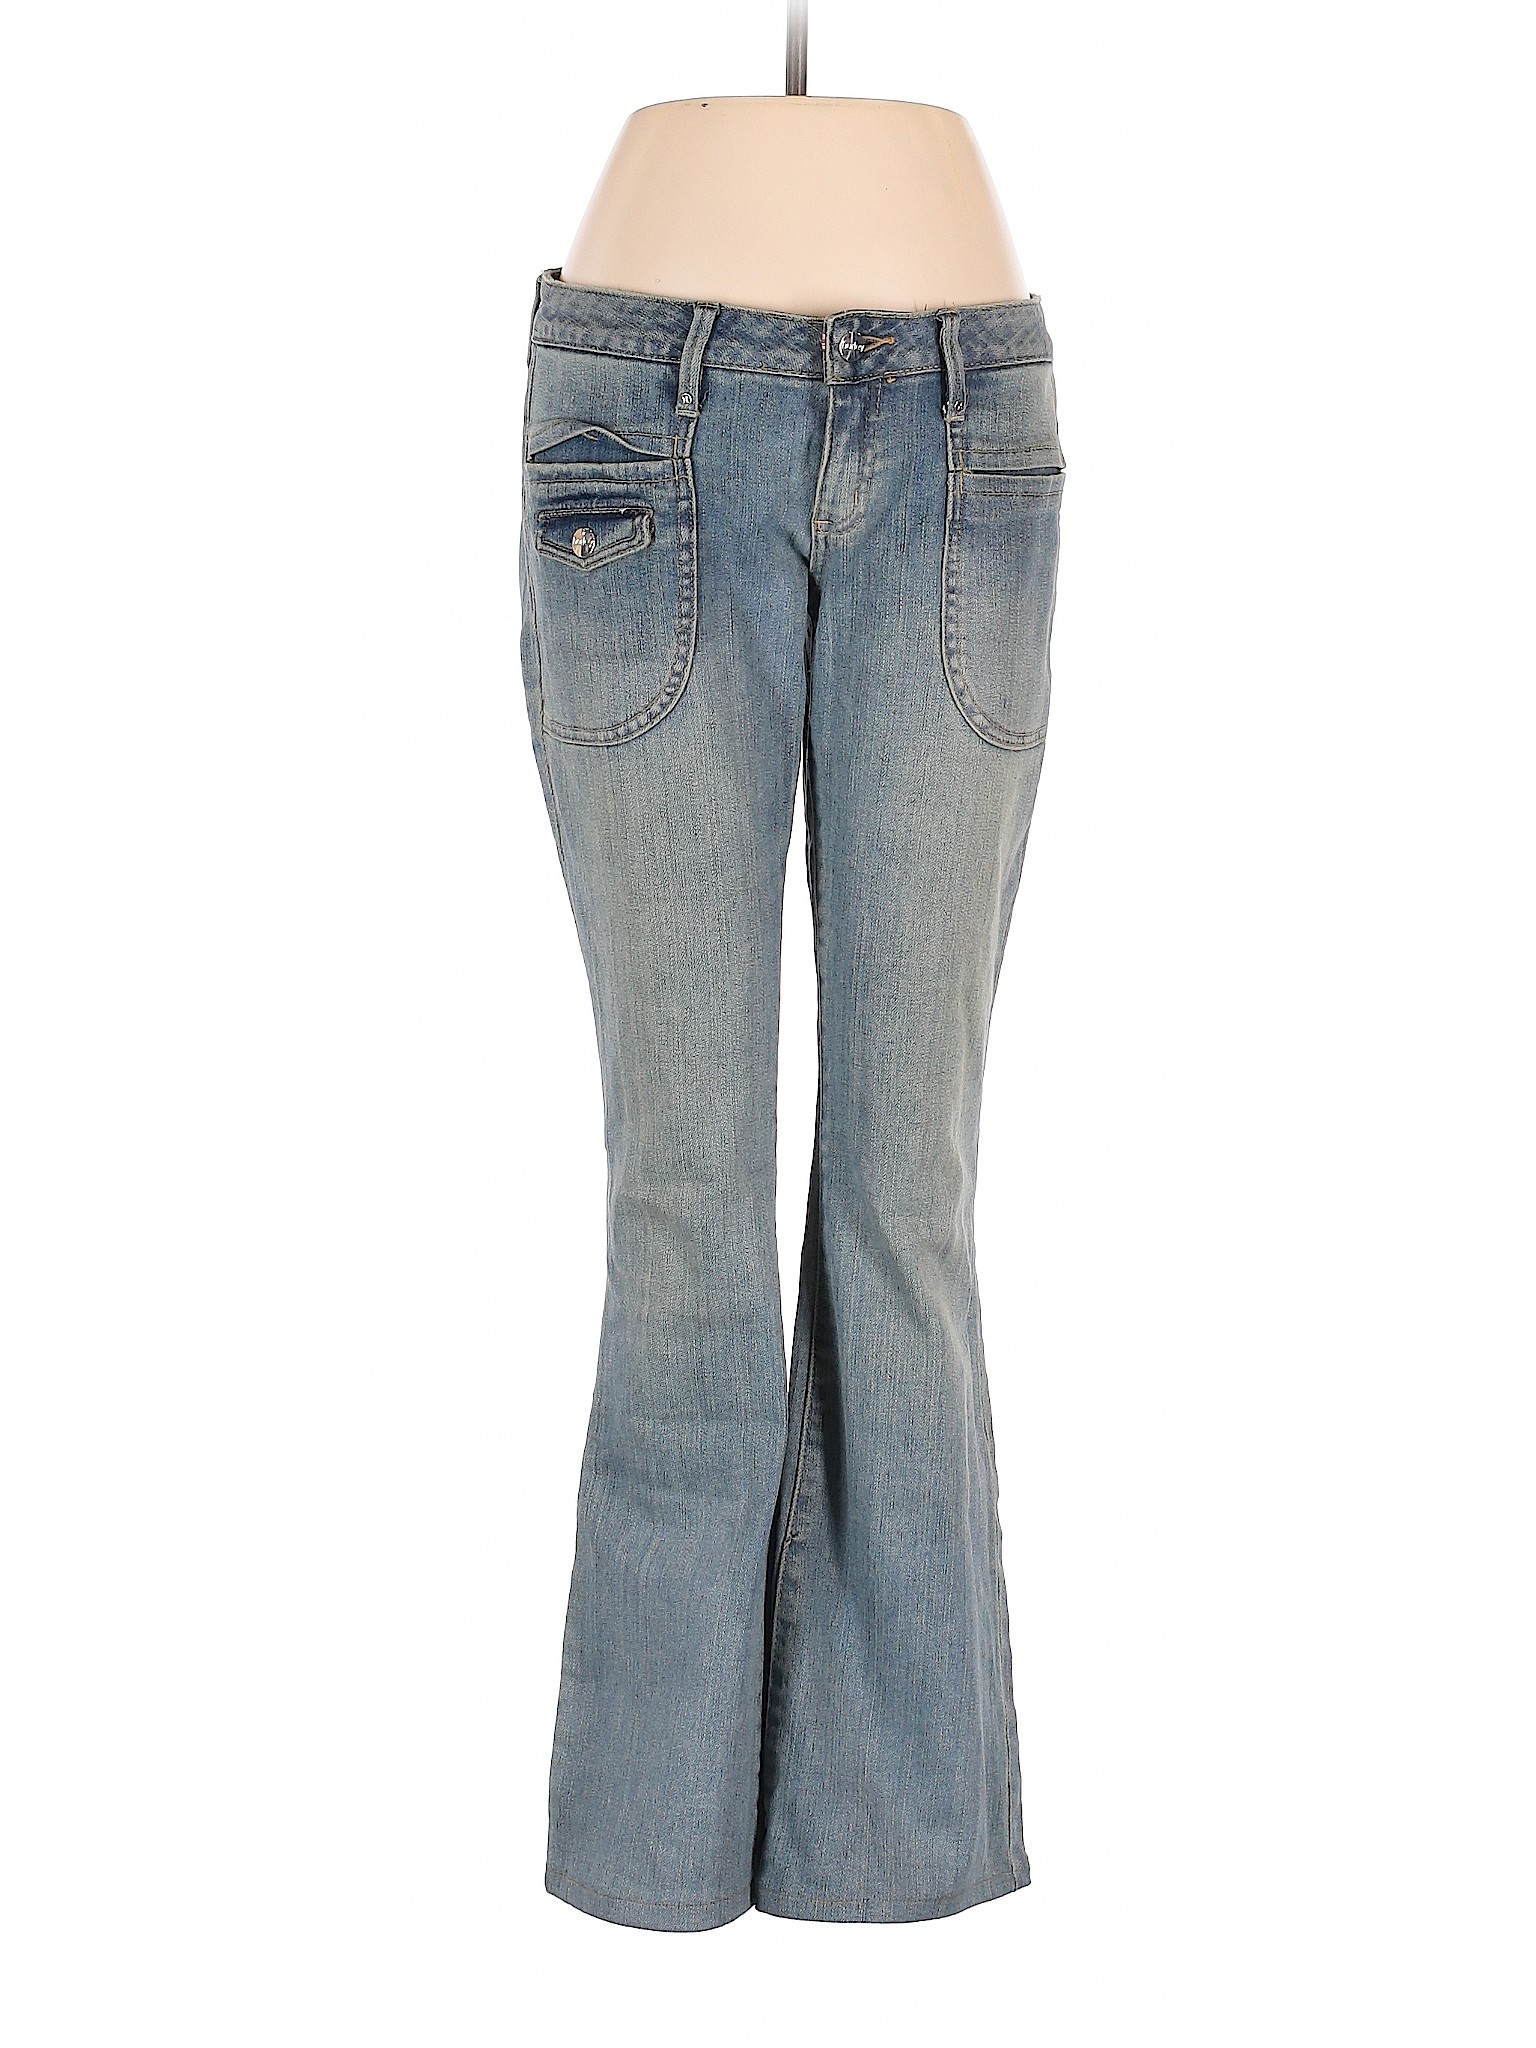 Hurley Women Blue Jeans 7 | eBay